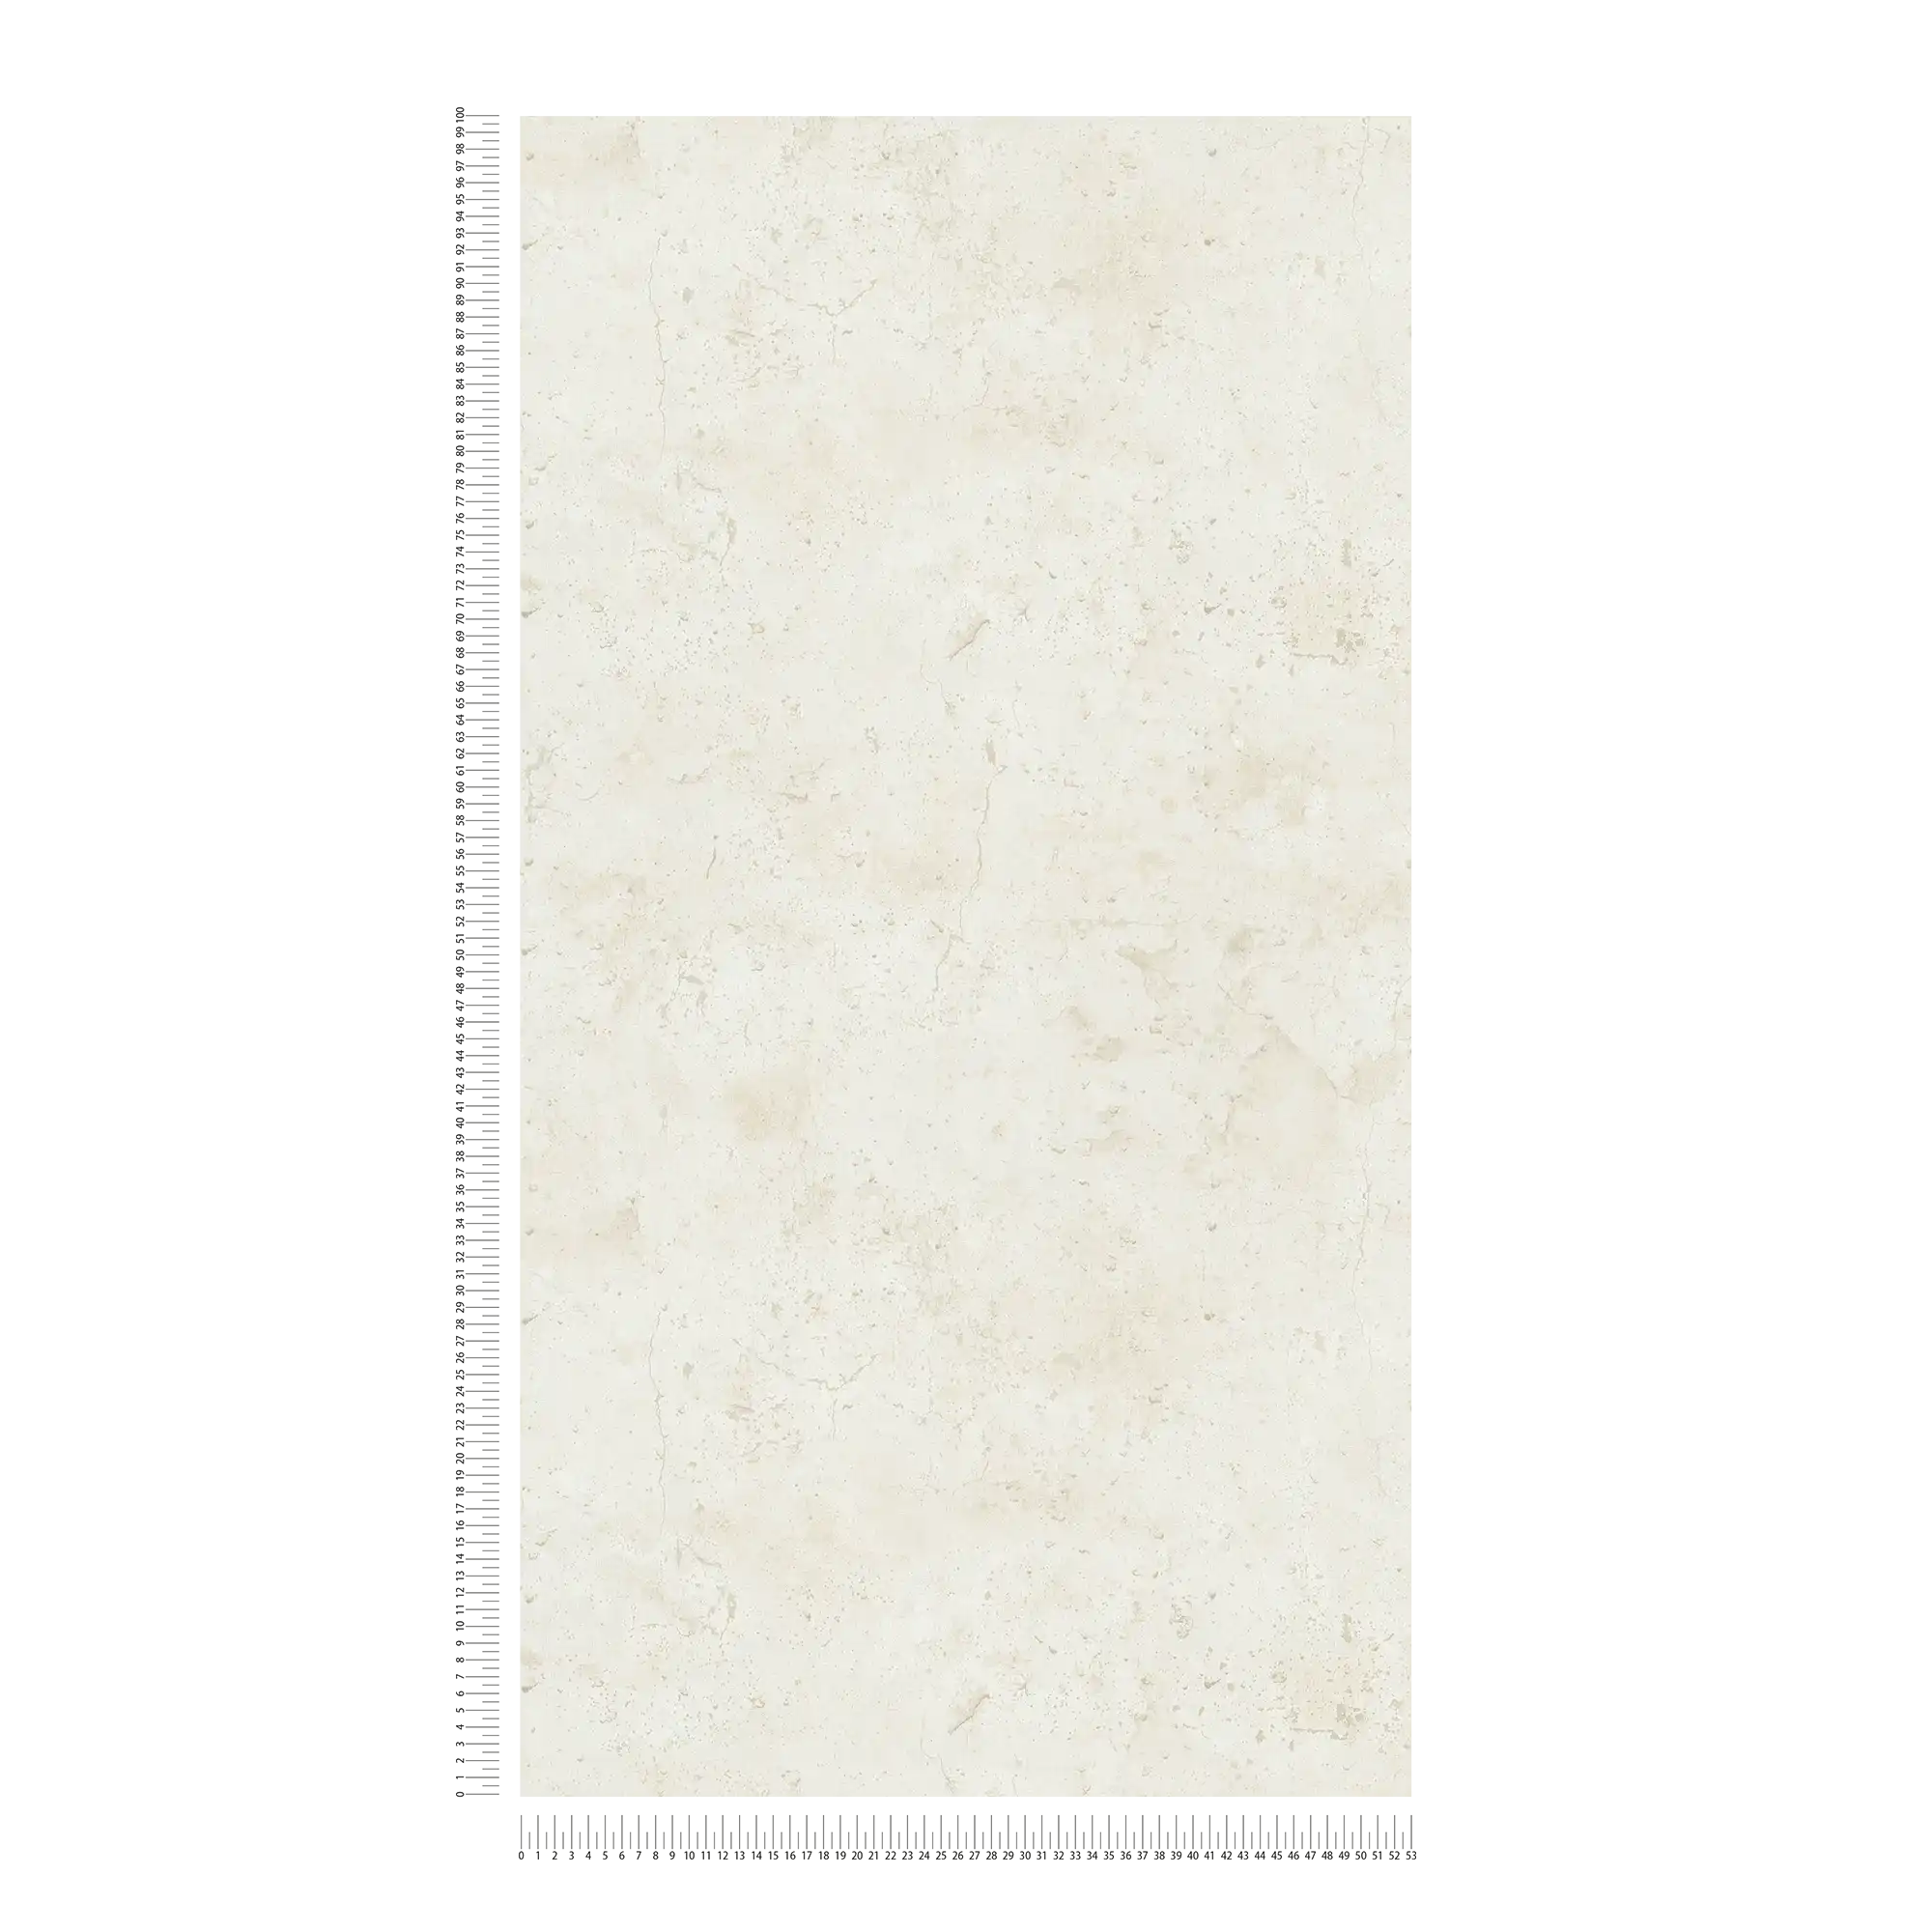             Carta da parati in cemento in stile industriale - crema, bianco
        